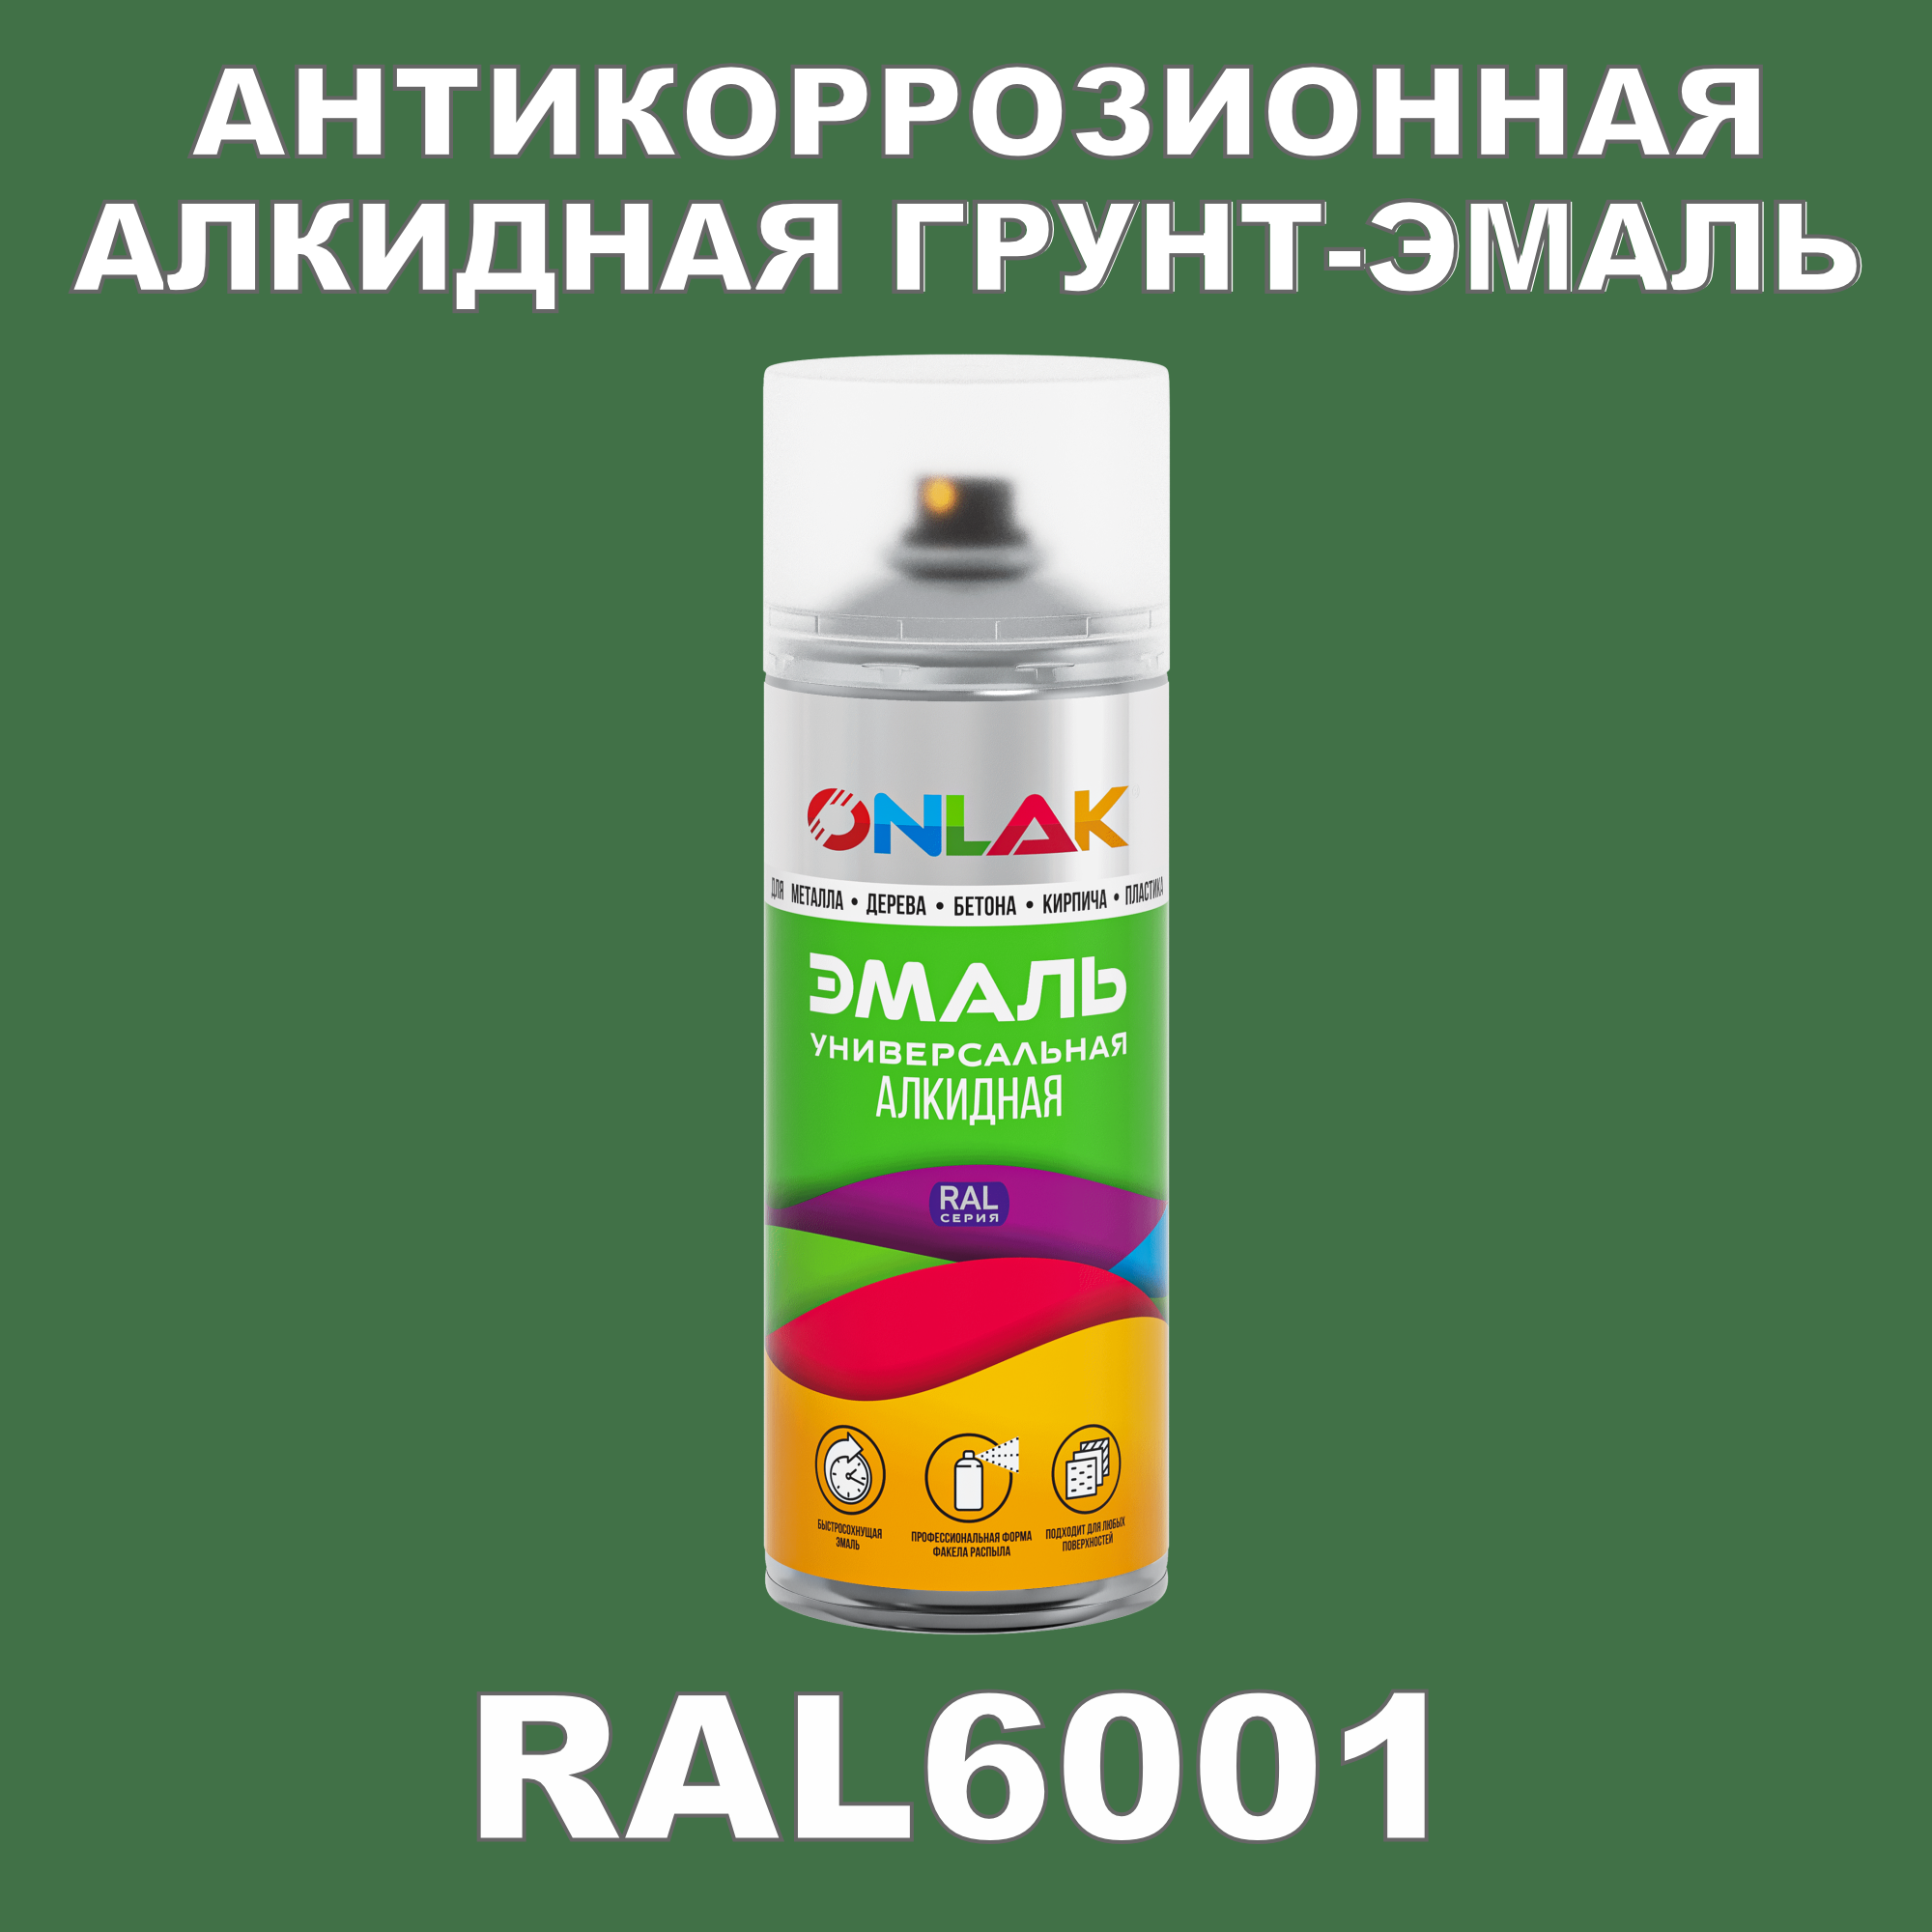 Антикоррозионная грунт-эмаль ONLAK RAL6001 полуматовая для металла и защиты от ржавчины